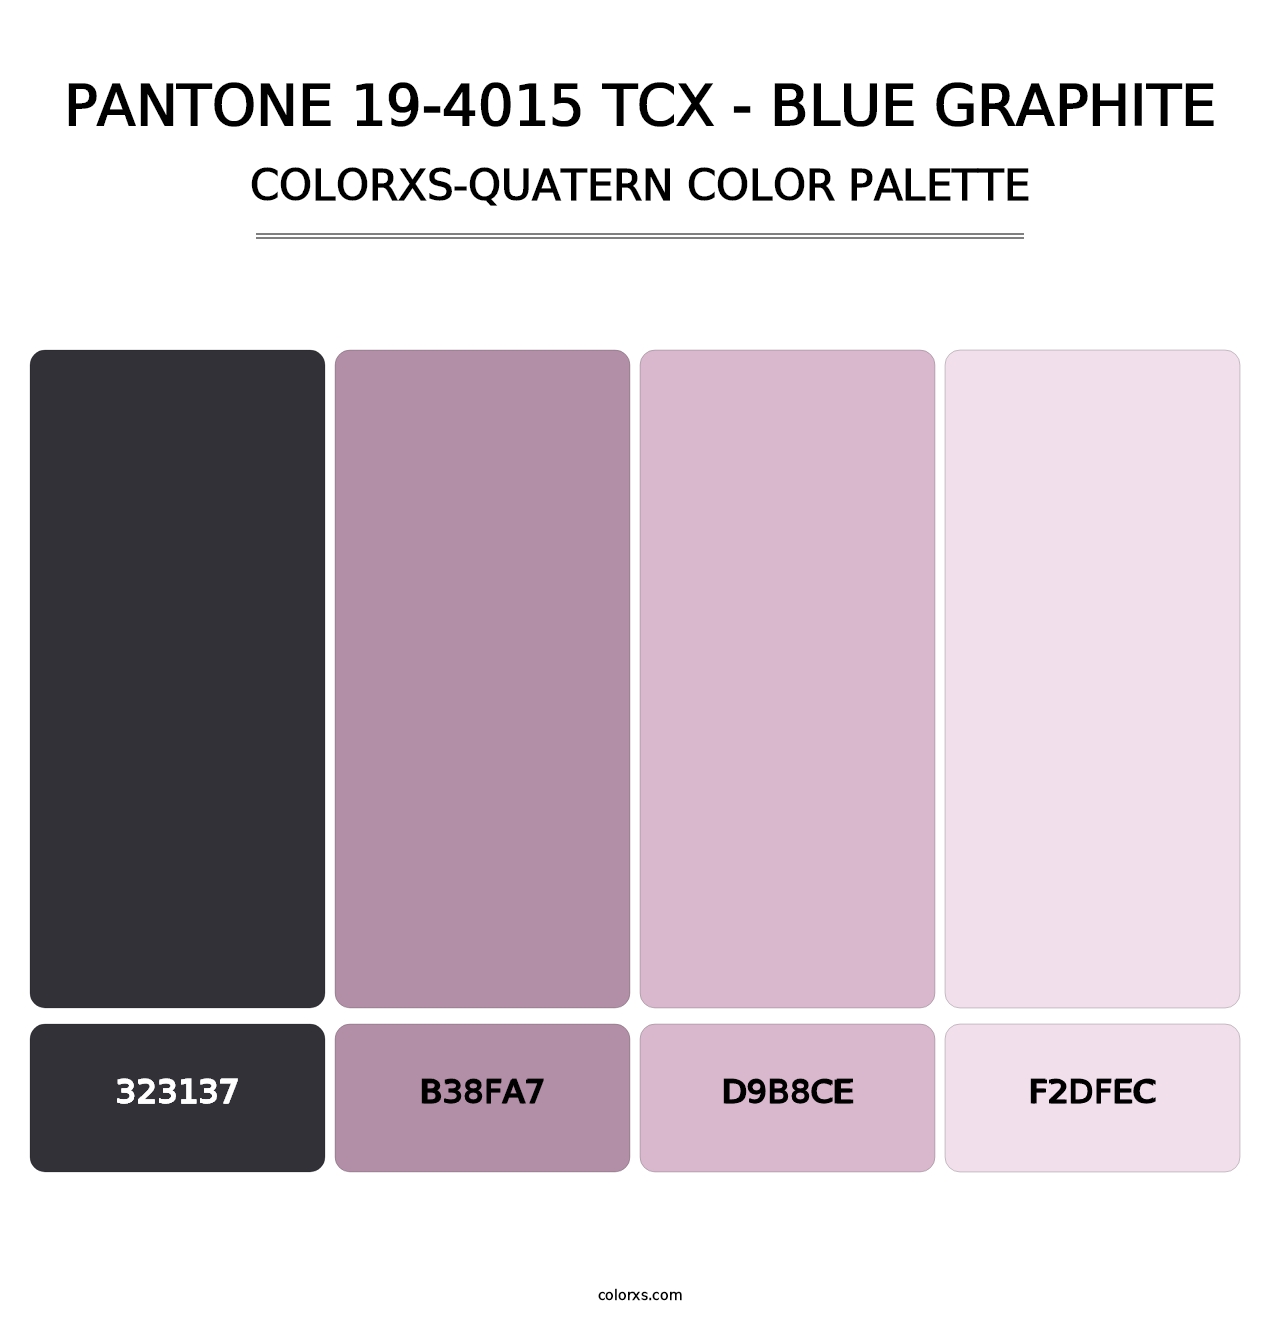 PANTONE 19-4015 TCX - Blue Graphite - Colorxs Quatern Palette